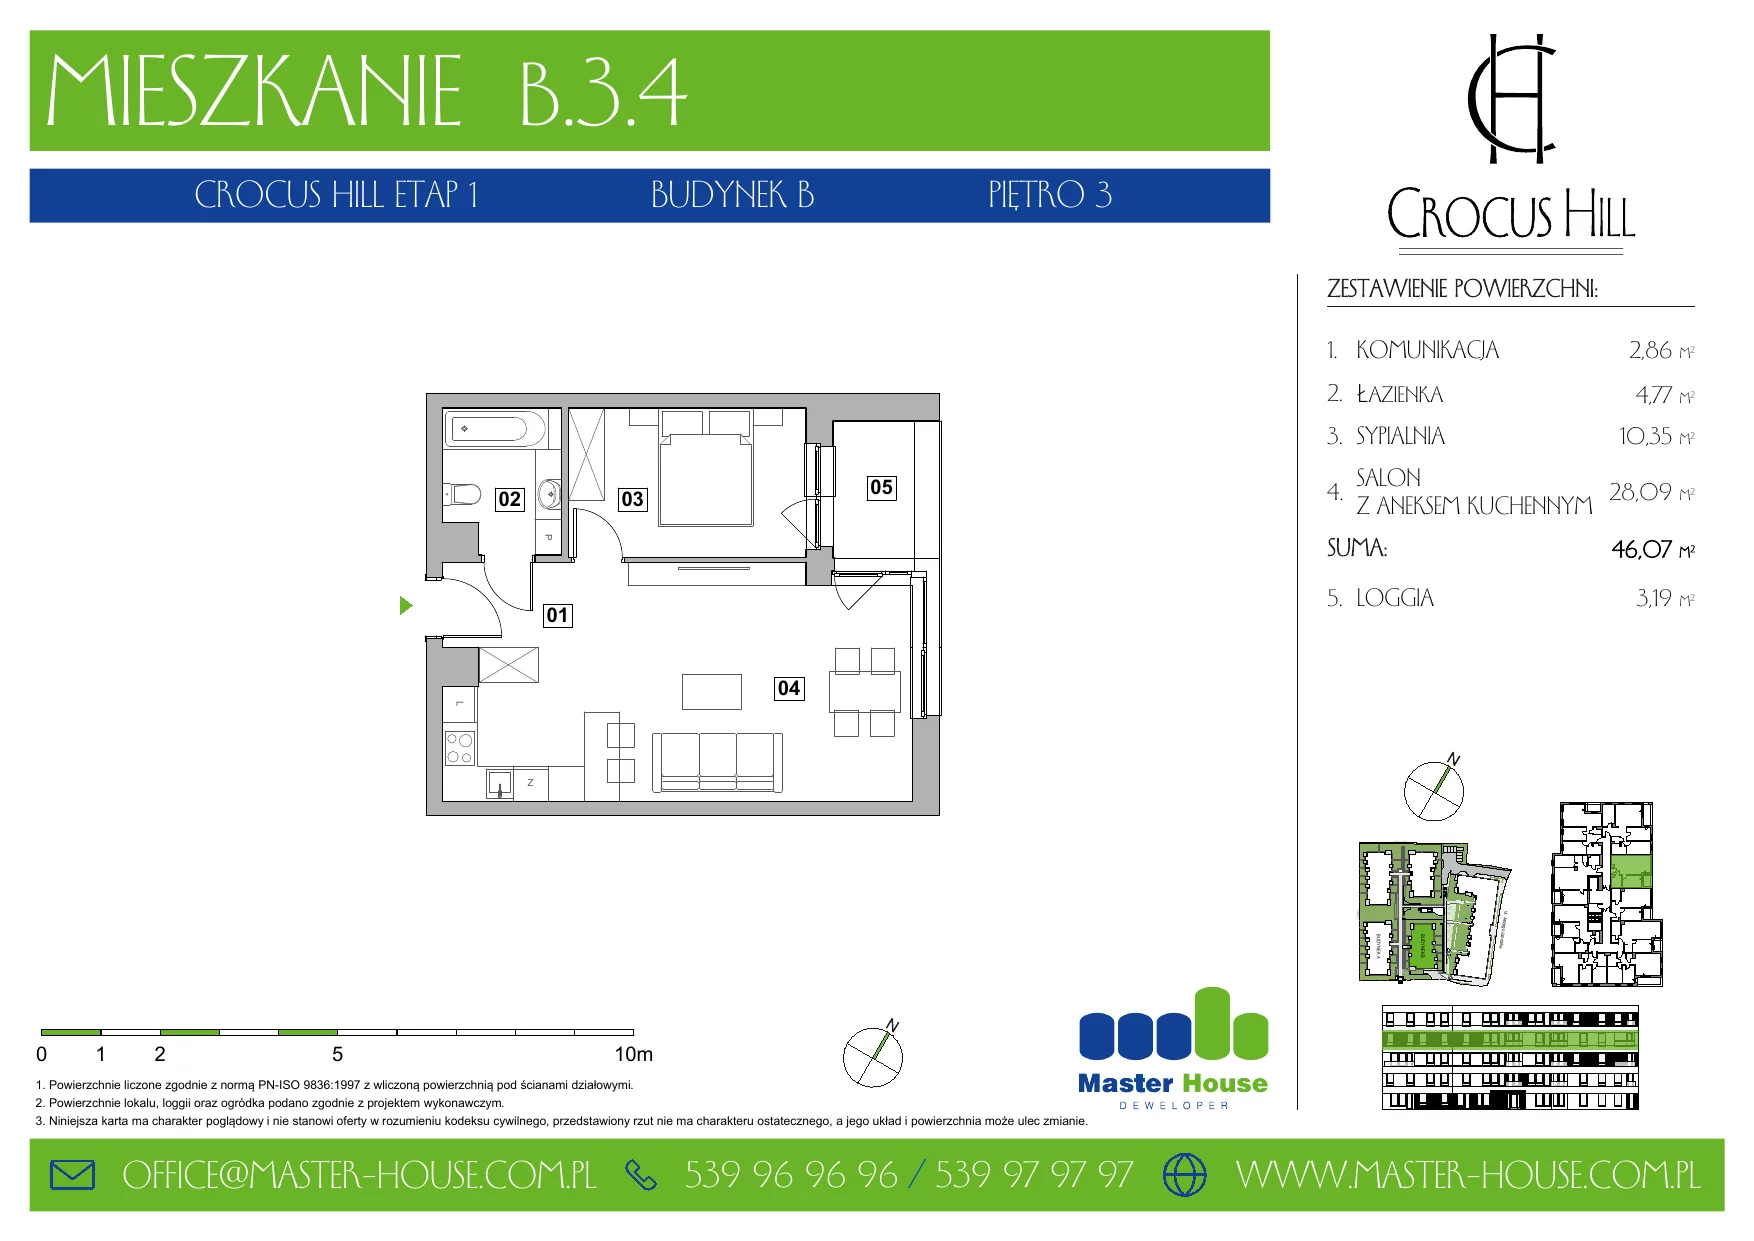 Mieszkanie 46,07 m², piętro 3, oferta nr B.3.4, Crocus Hill, Szczecin, Śródmieście, ul. Jerzego Janosika 2, 2A, 3, 3A